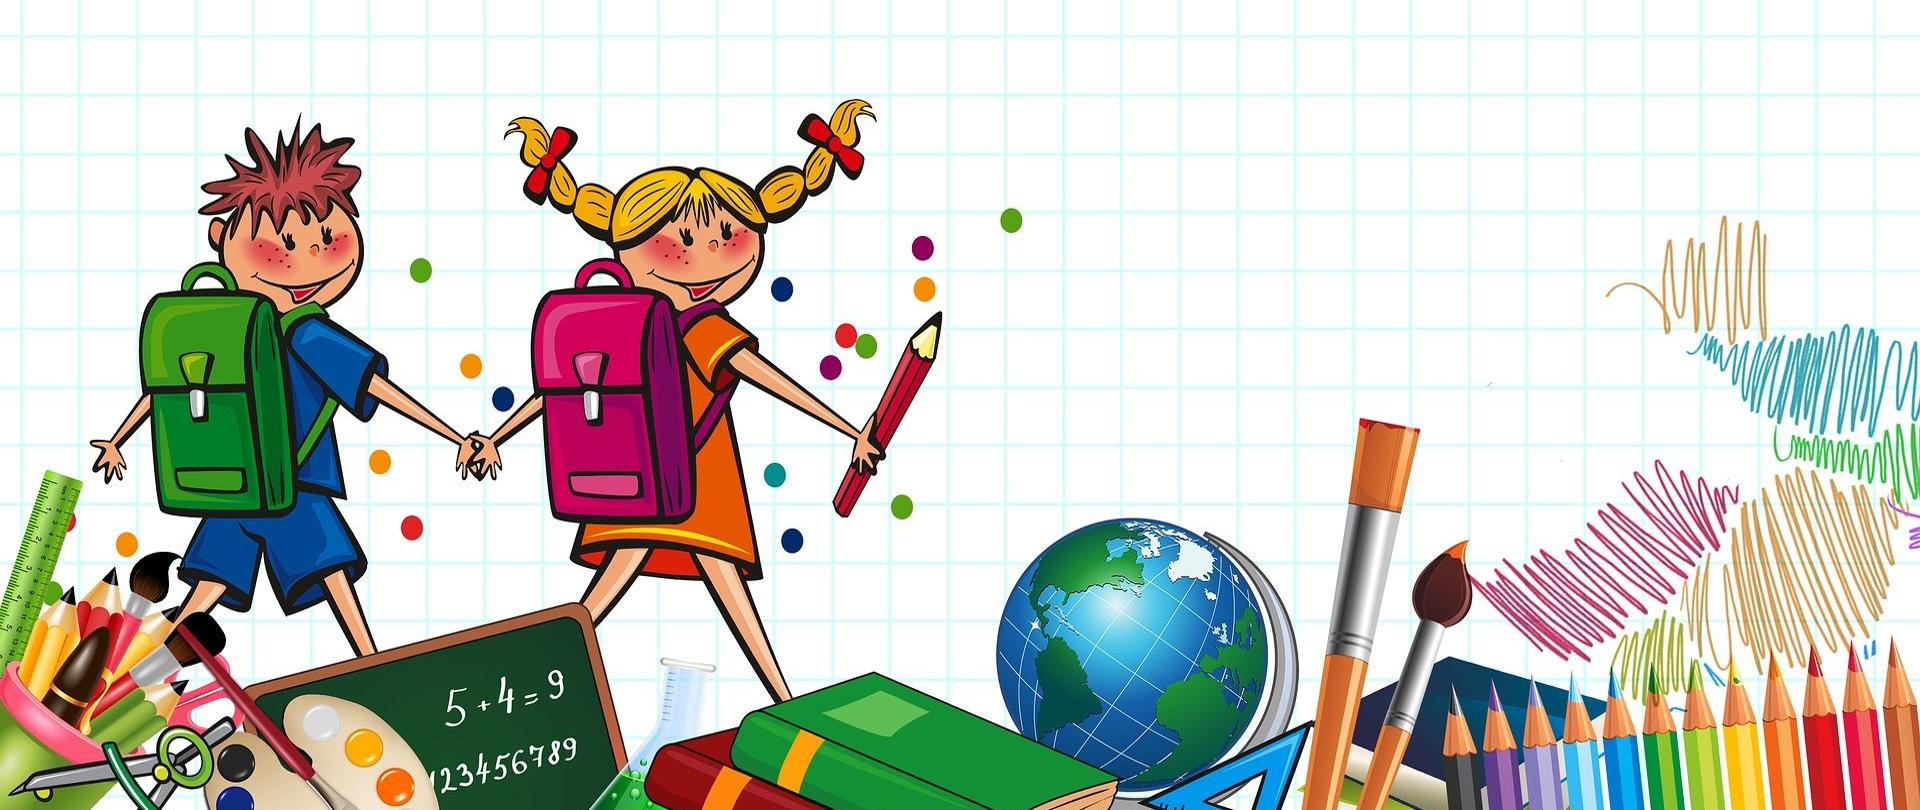 Dzieci idące do szkoły z plecakami, przybory szkolne takie jak książki, globus, kredki